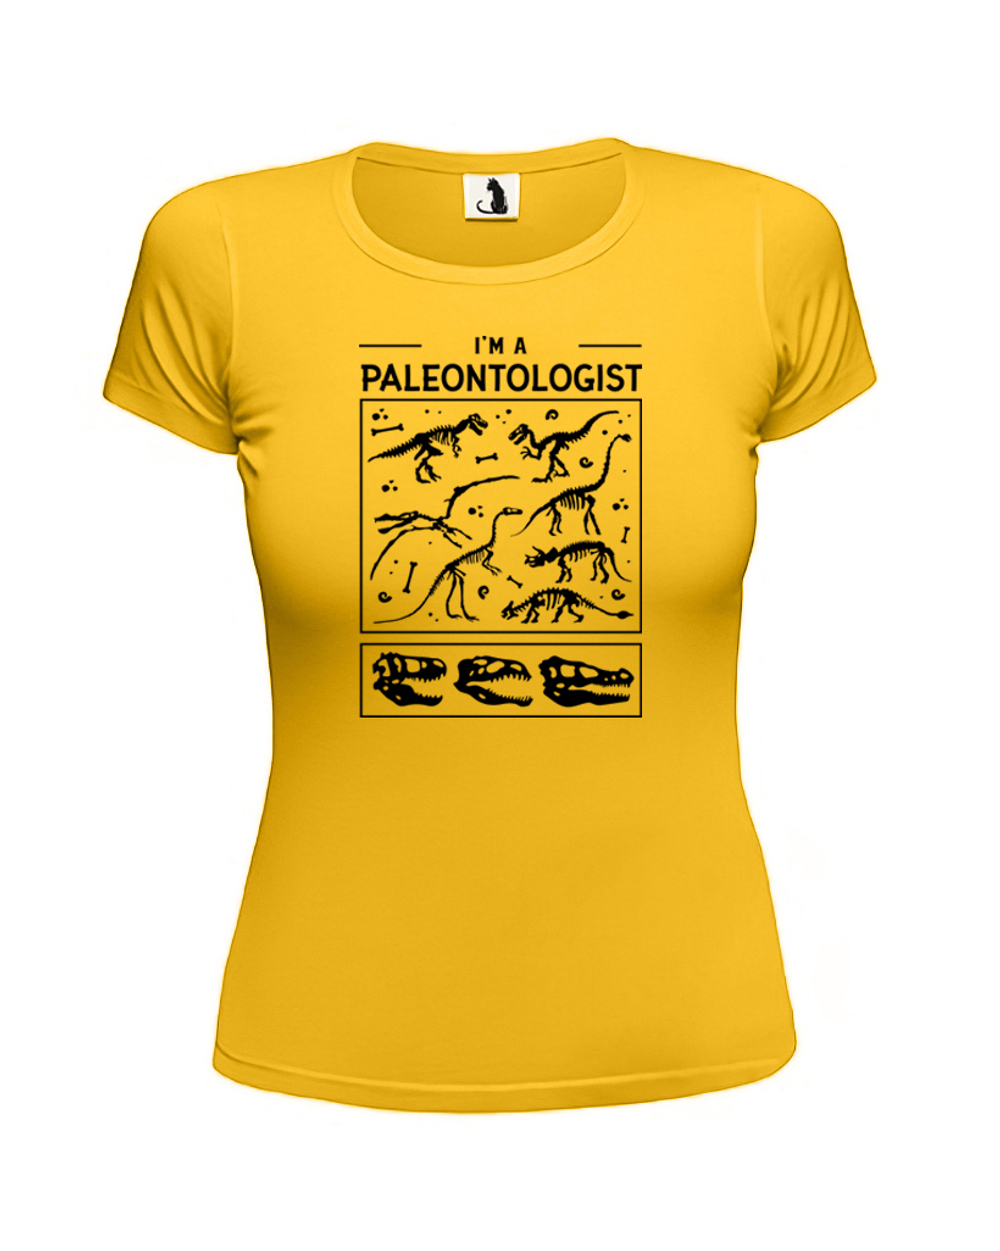 Футболка Я палеонтолог женская приталенная желтая с черным рисунком